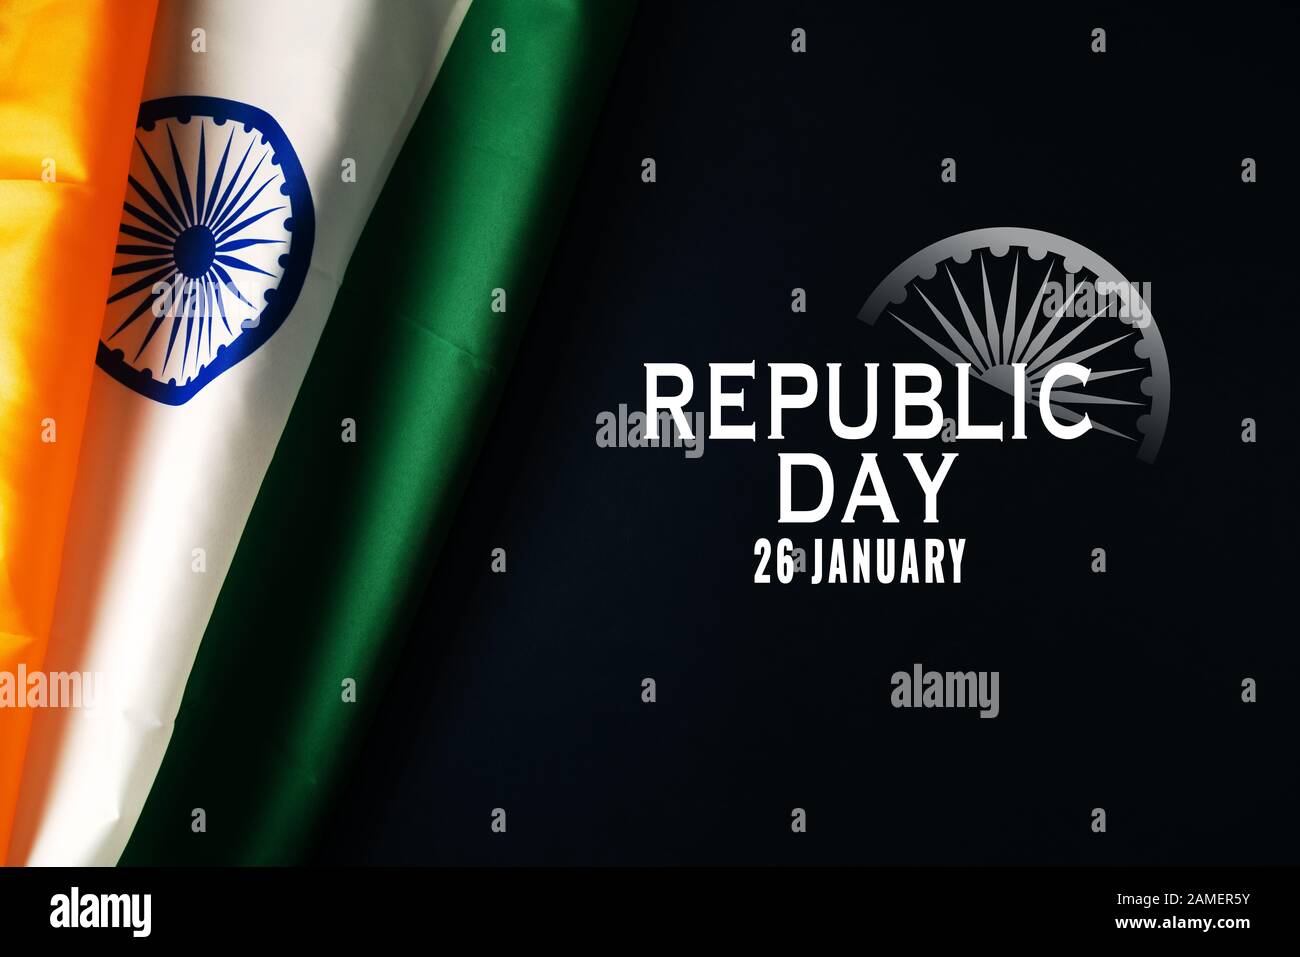 Ngày Quốc khánh Ấn Độ - một ngày đặc biệt của đất nước cổ kính này. Hãy cùng chiêm ngưỡng hình ảnh vẻ đẹp của quốc kỳ Ấn Độ tung bay trên thành phố New Delhi và khung cảnh hoành tráng của lễ diễu hành trong ngày này.